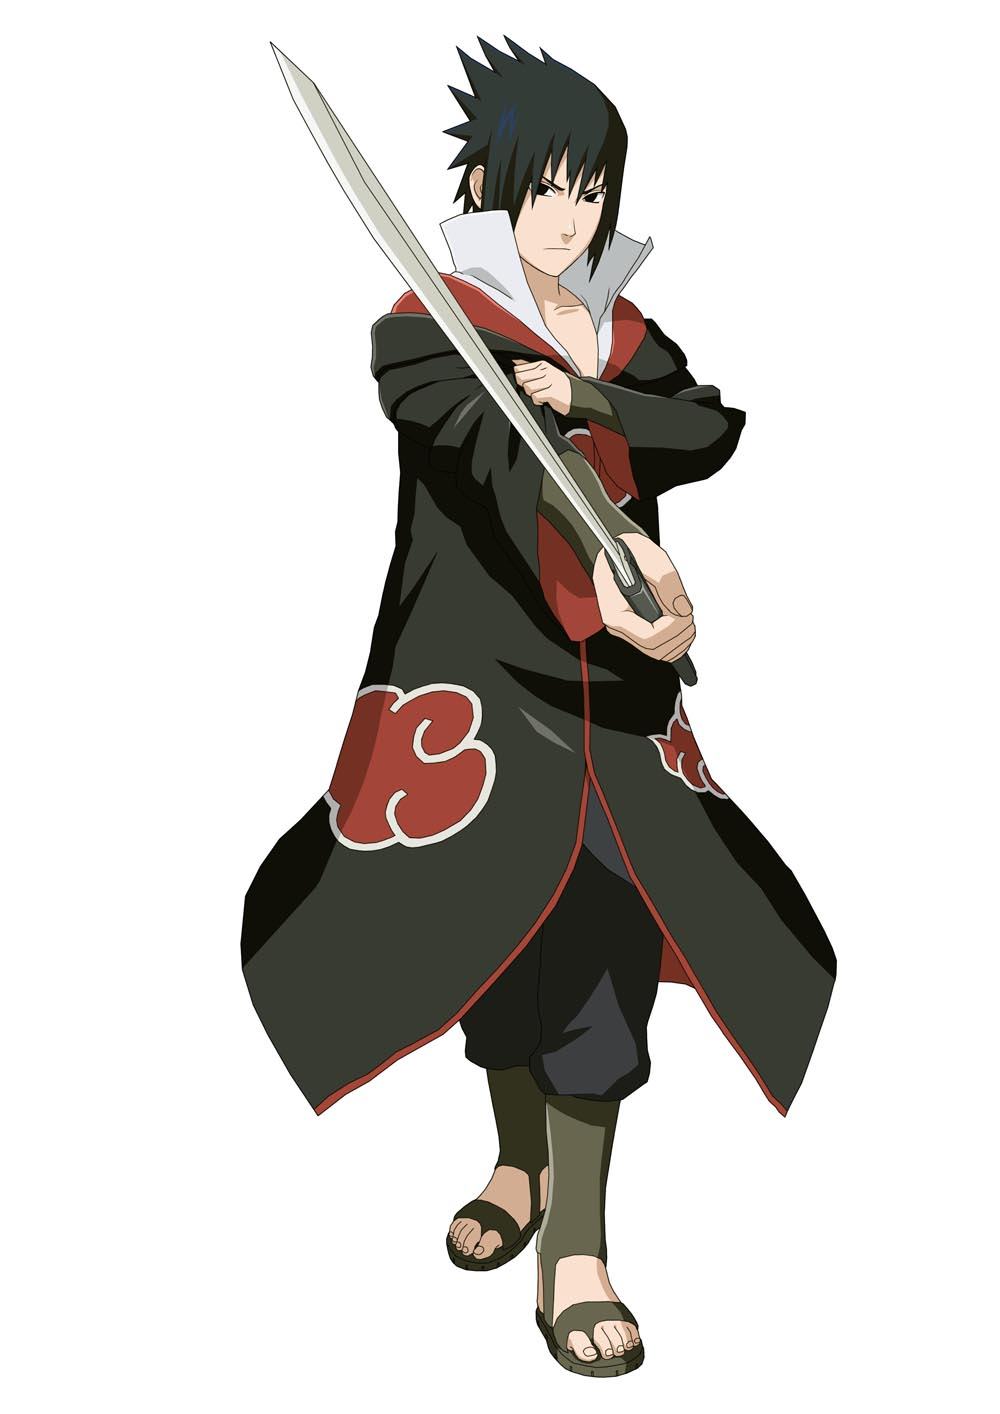 Hình ảnh uchiha sasuke chất lượng